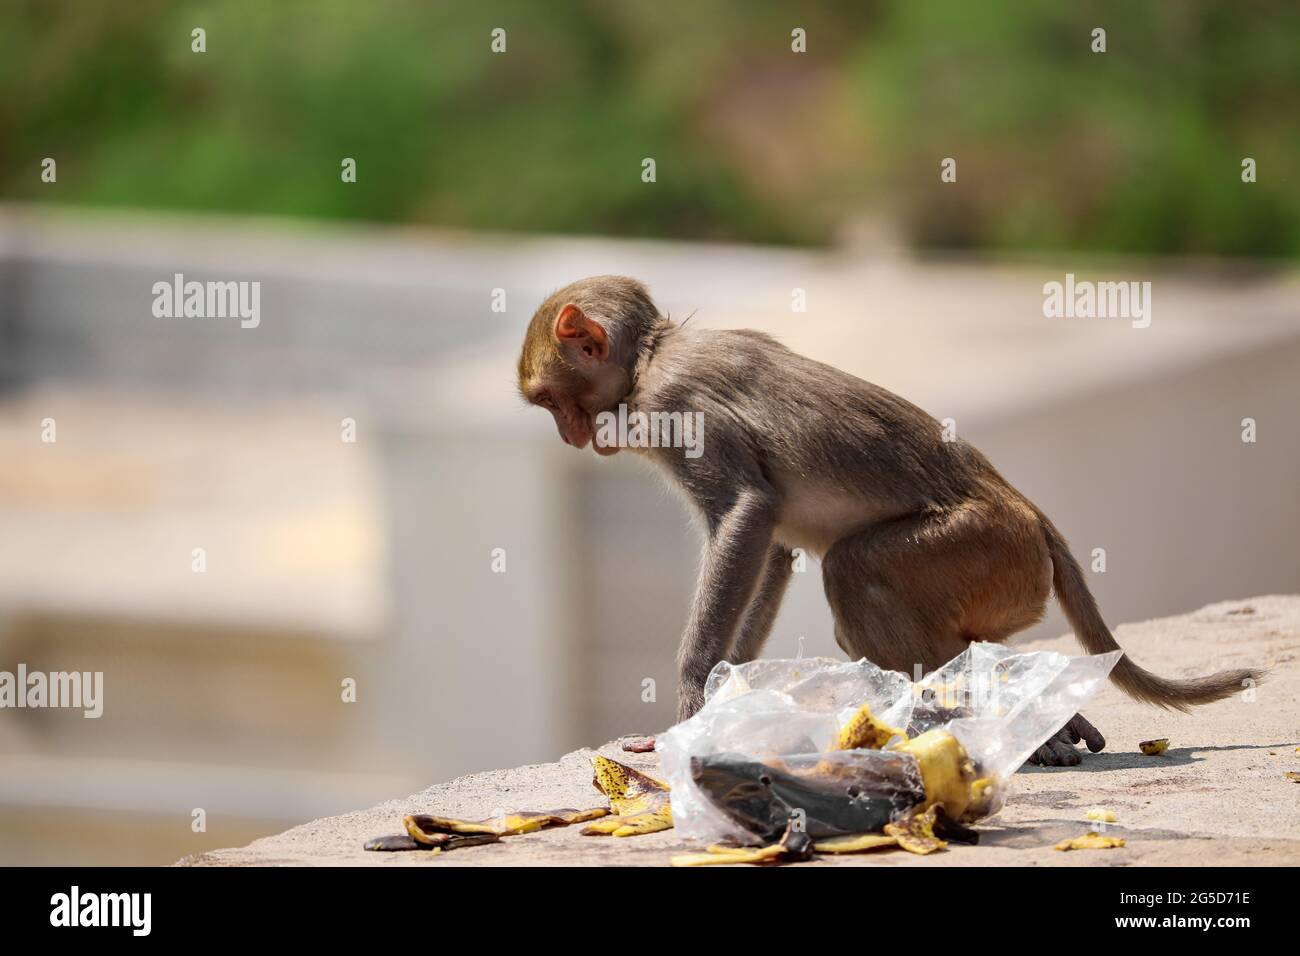 Baby Scimmia seduta sul muro, mangiare banana Foto Stock